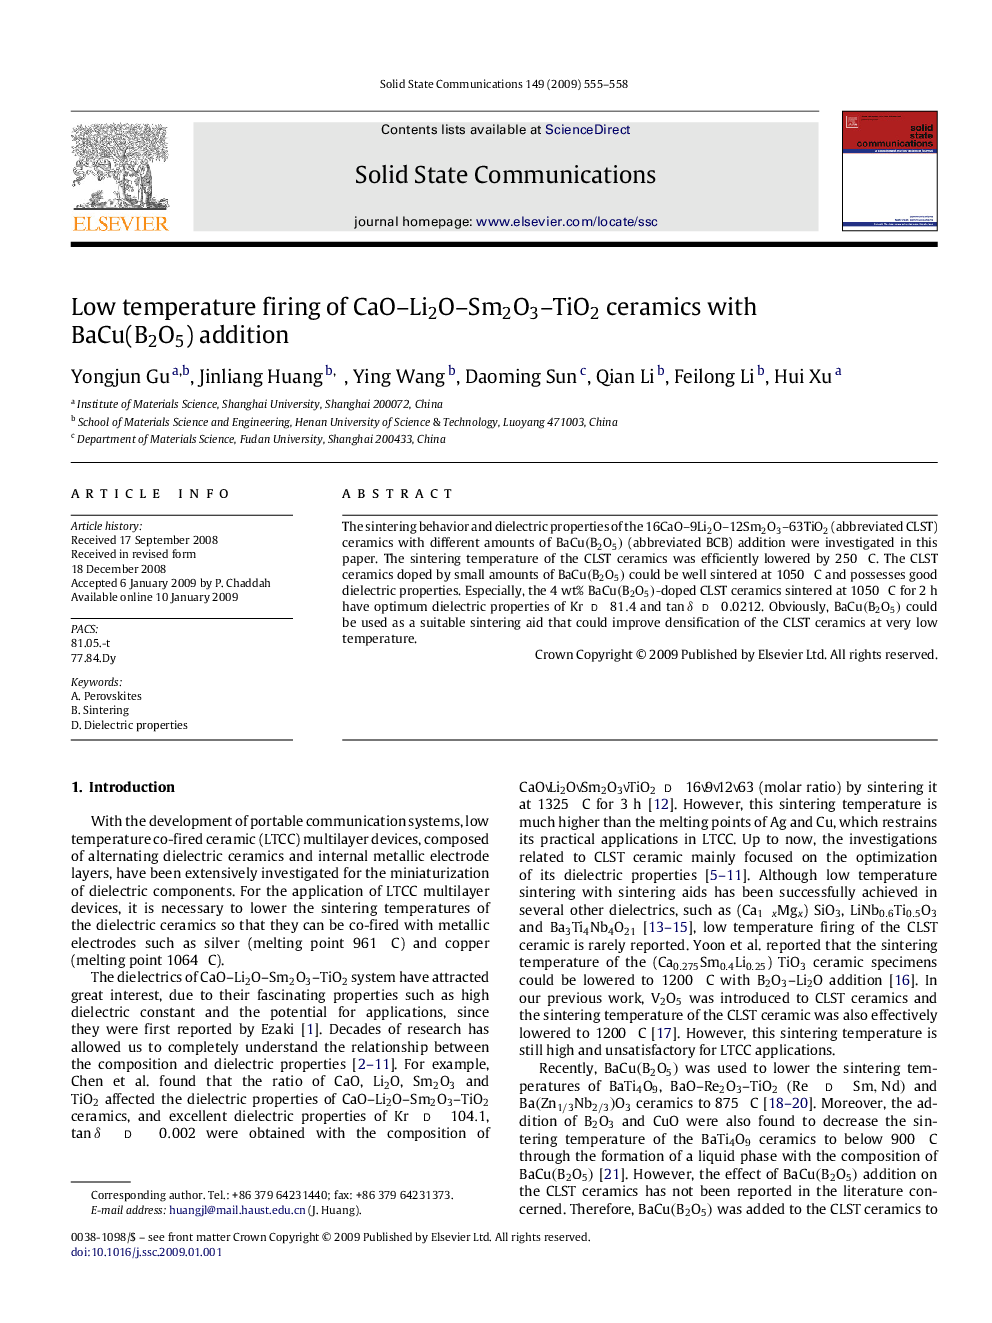 Low temperature firing of CaO–Li2O–Sm2O3–TiO2 ceramics with BaCu(B2O5) addition